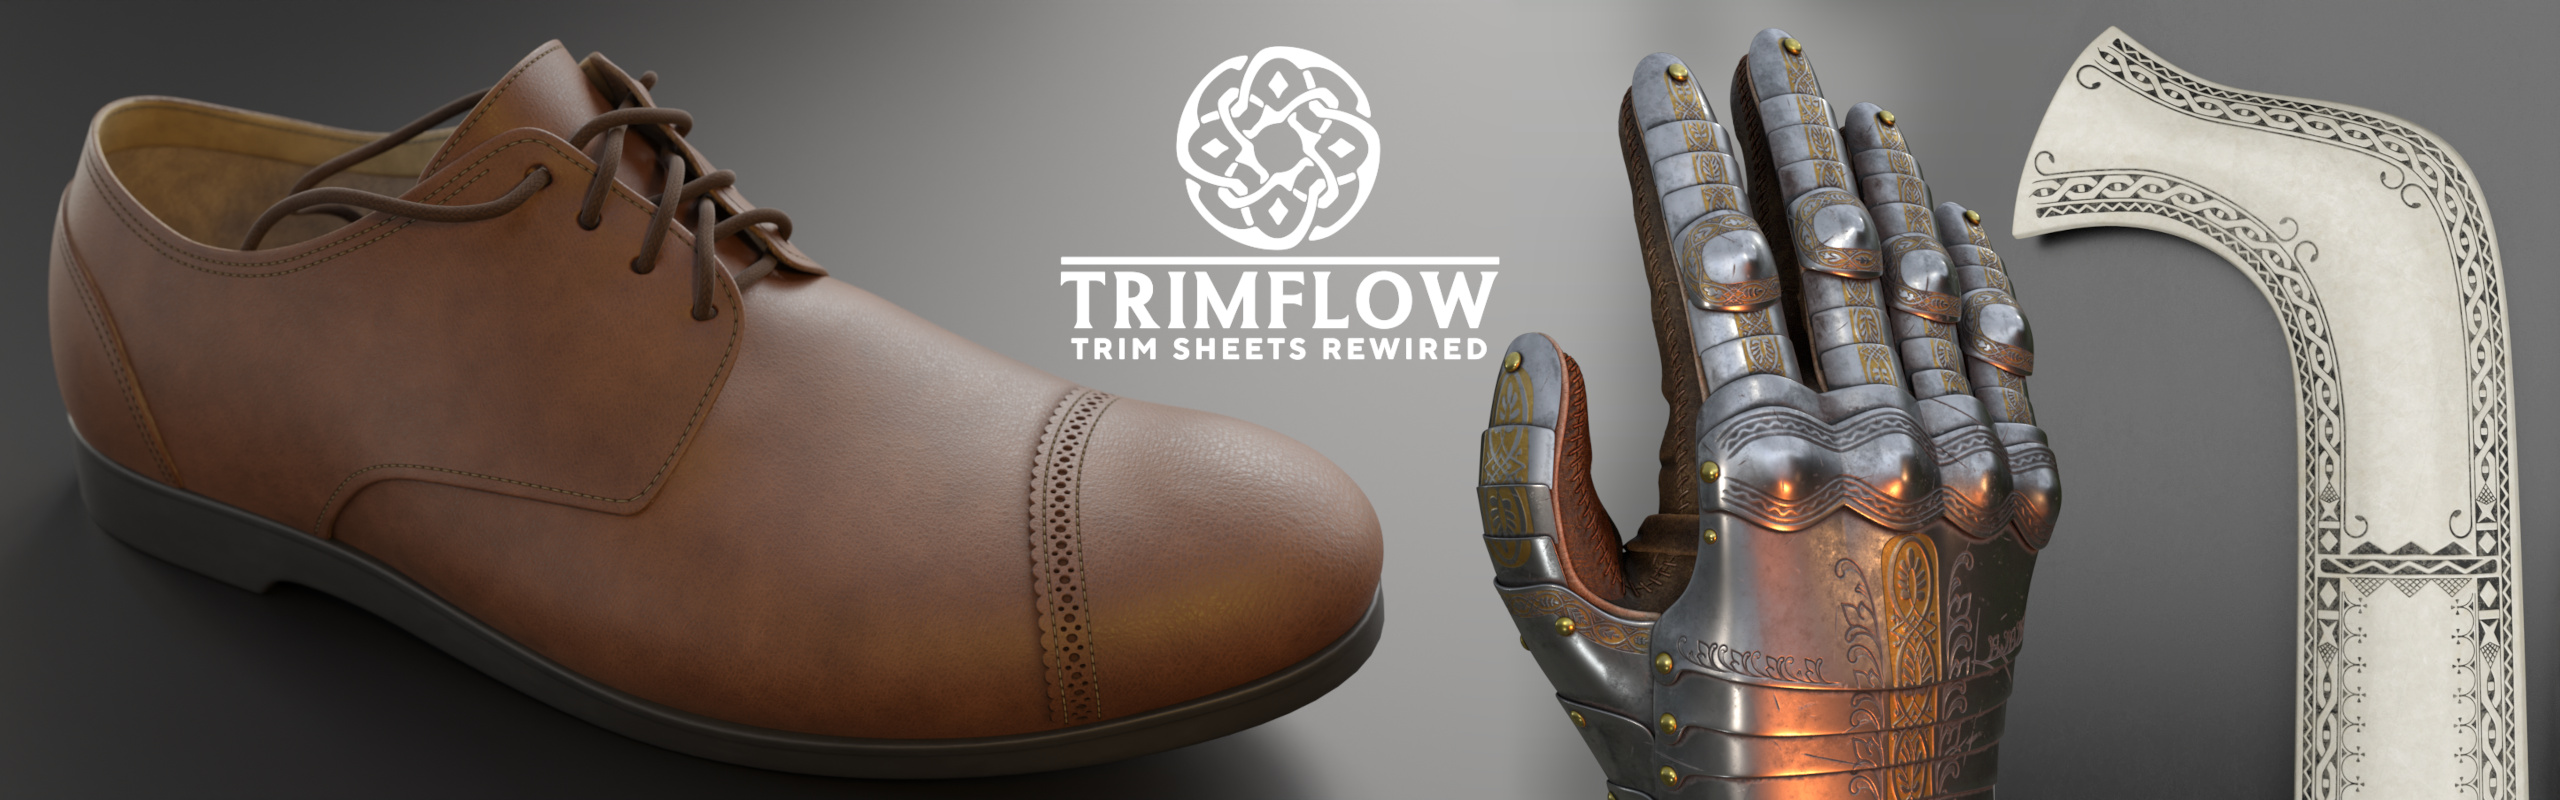 Trimflow